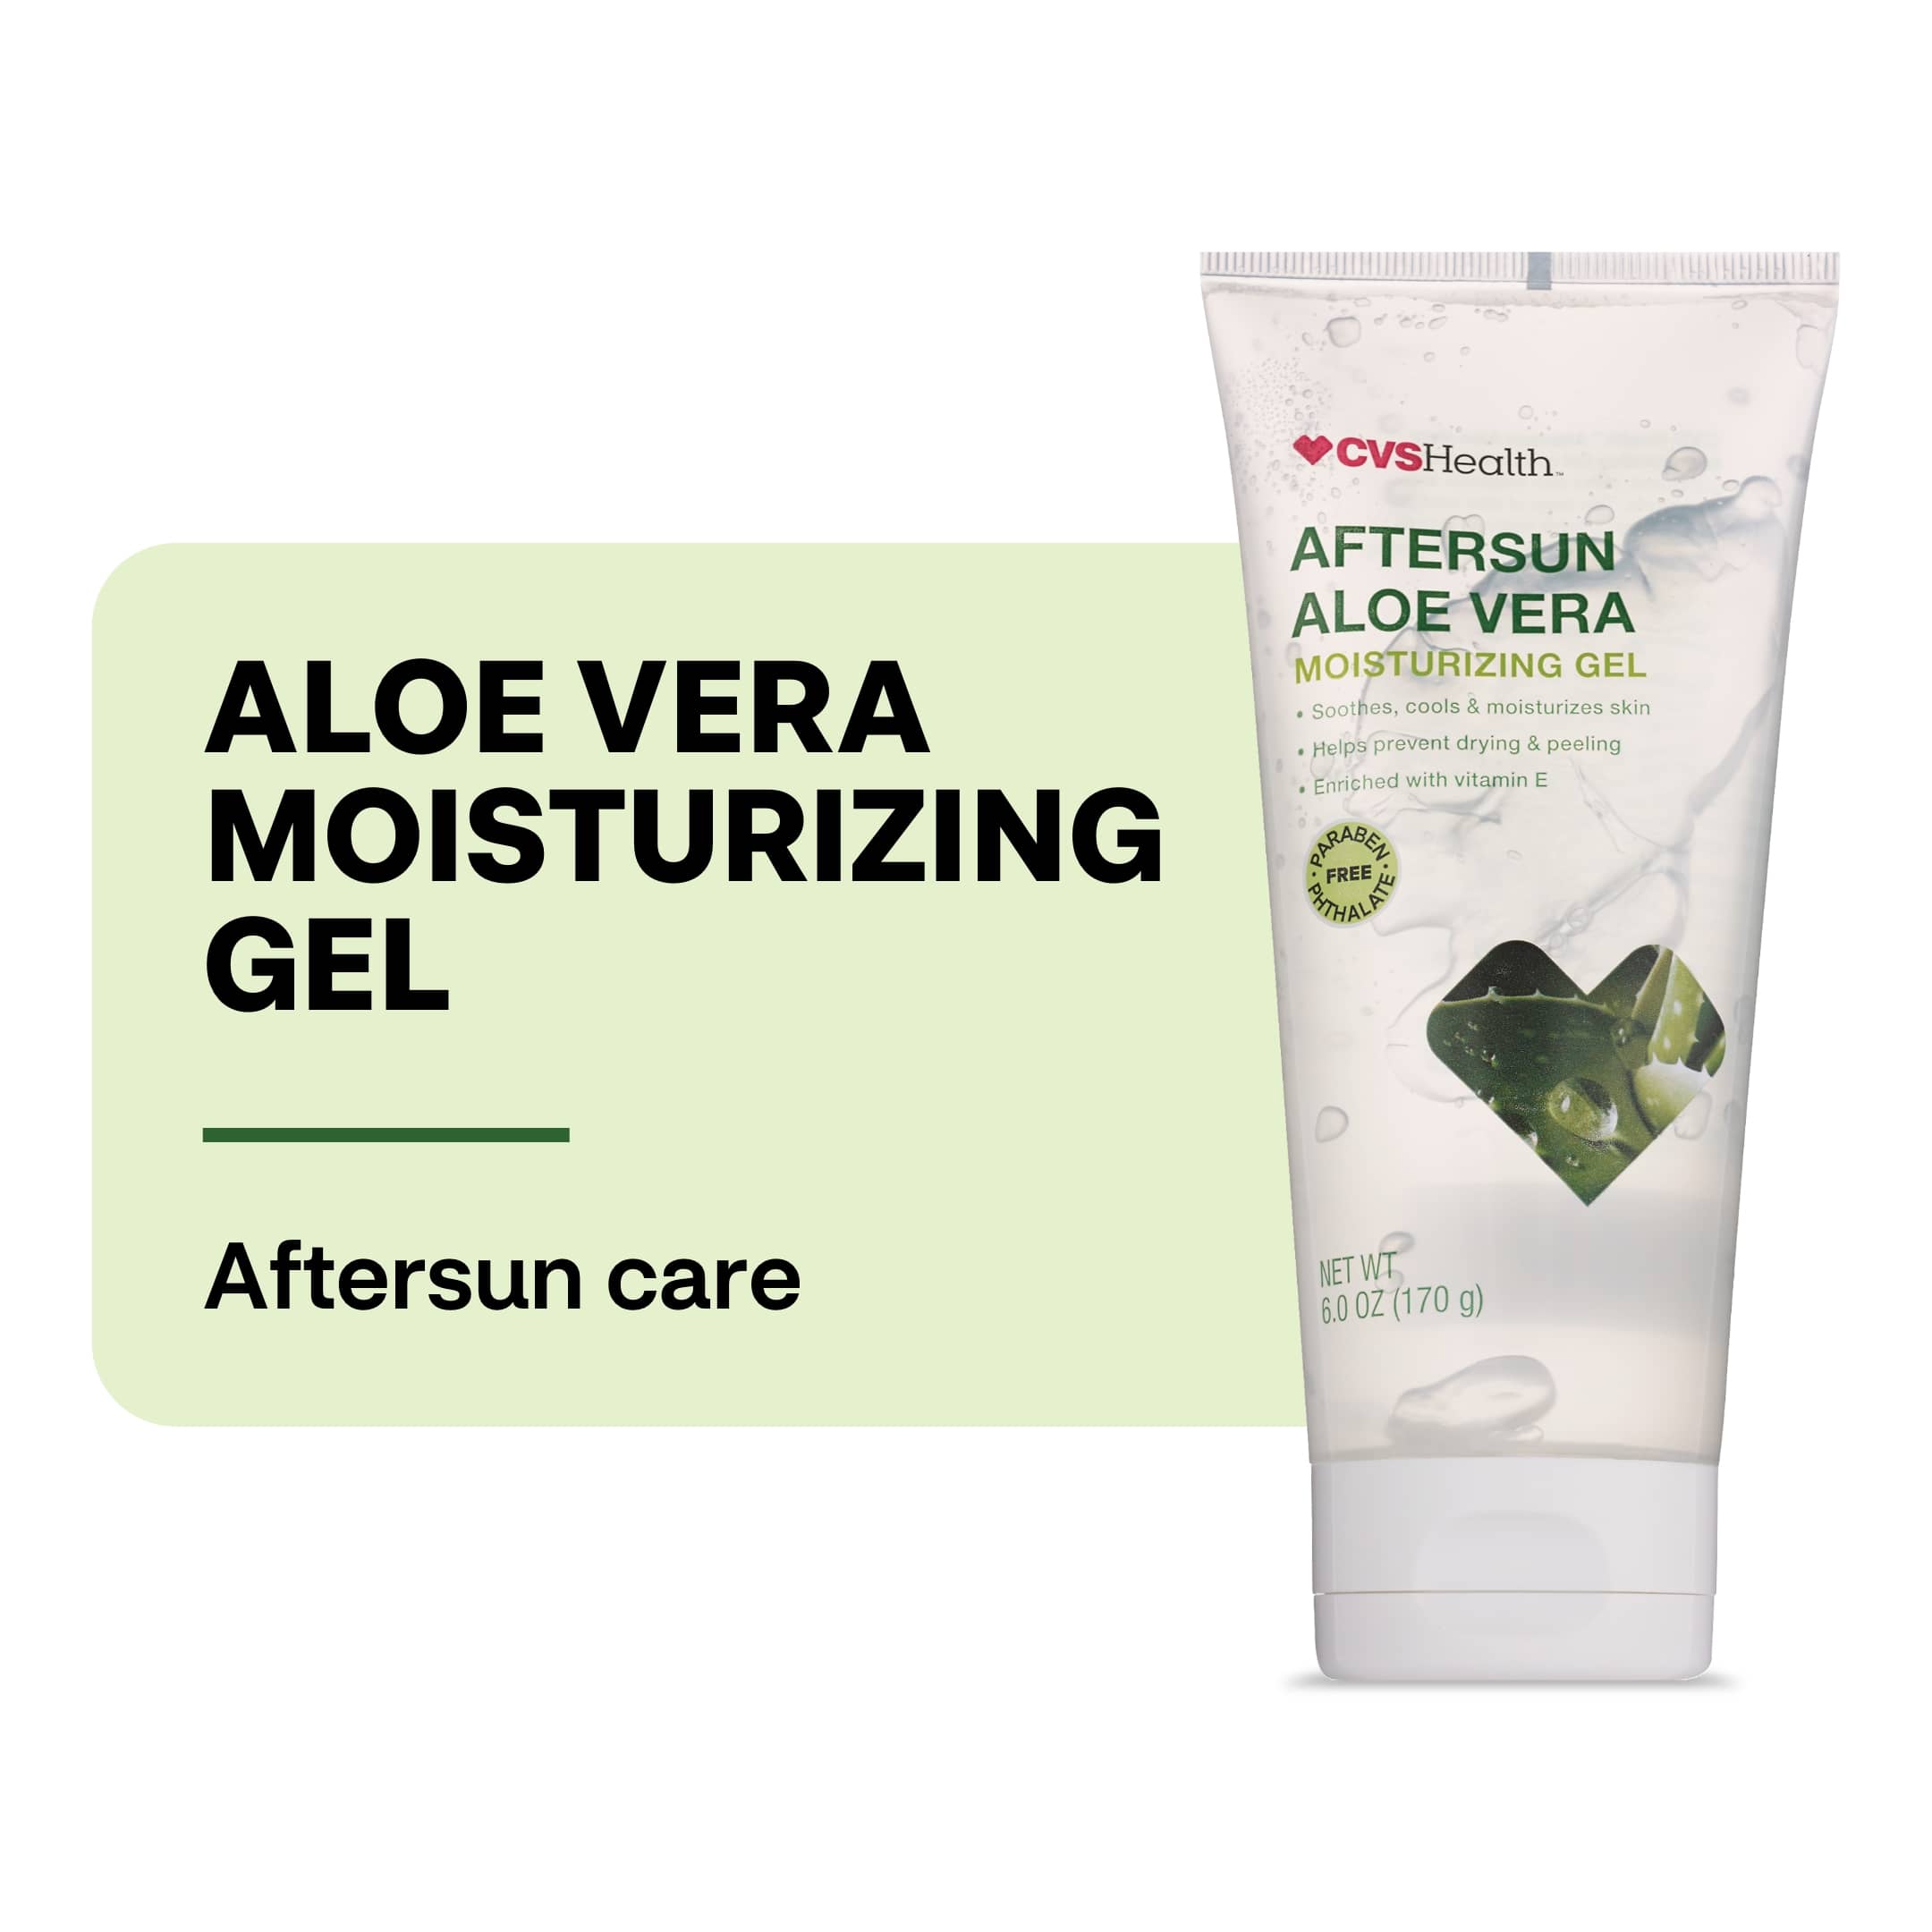 CVS Health Aftersun Aloe Vera Moisturizing Gel, 6 OZ